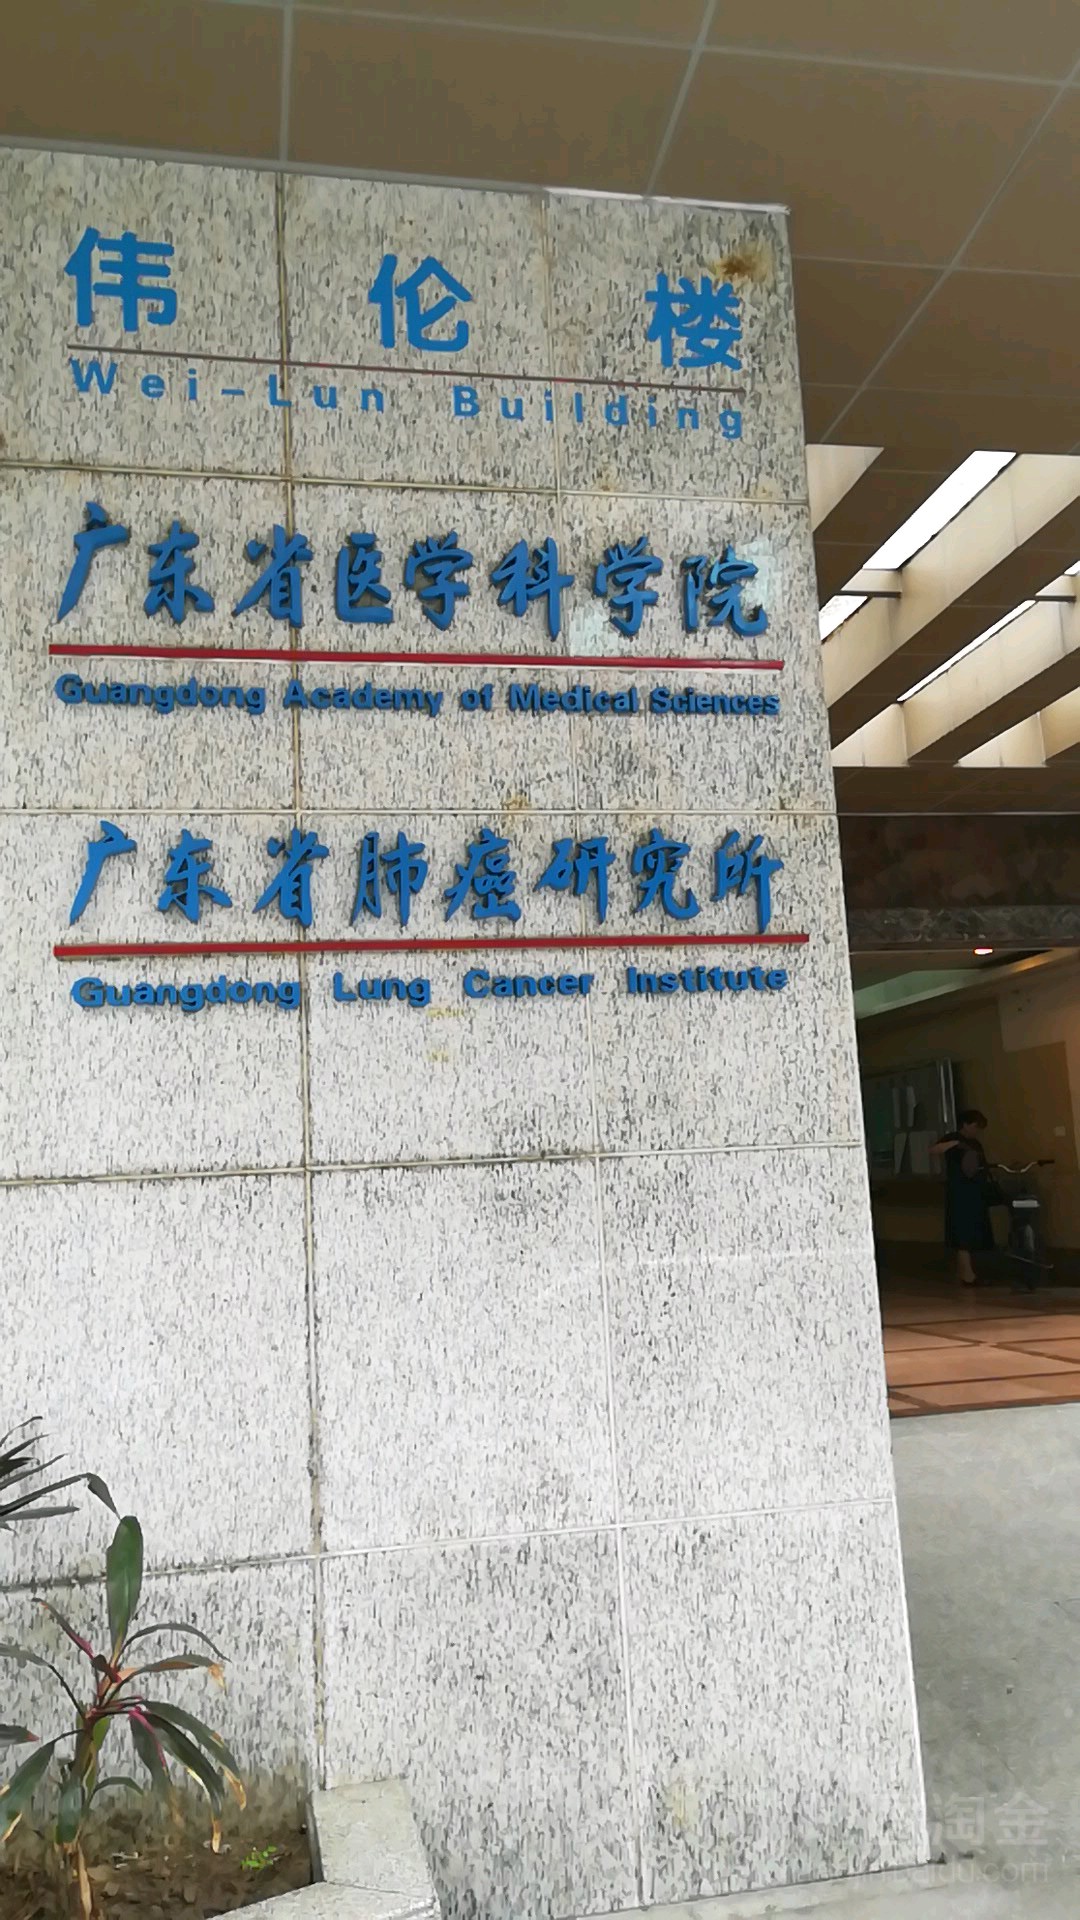 广东省人民医院logo图片